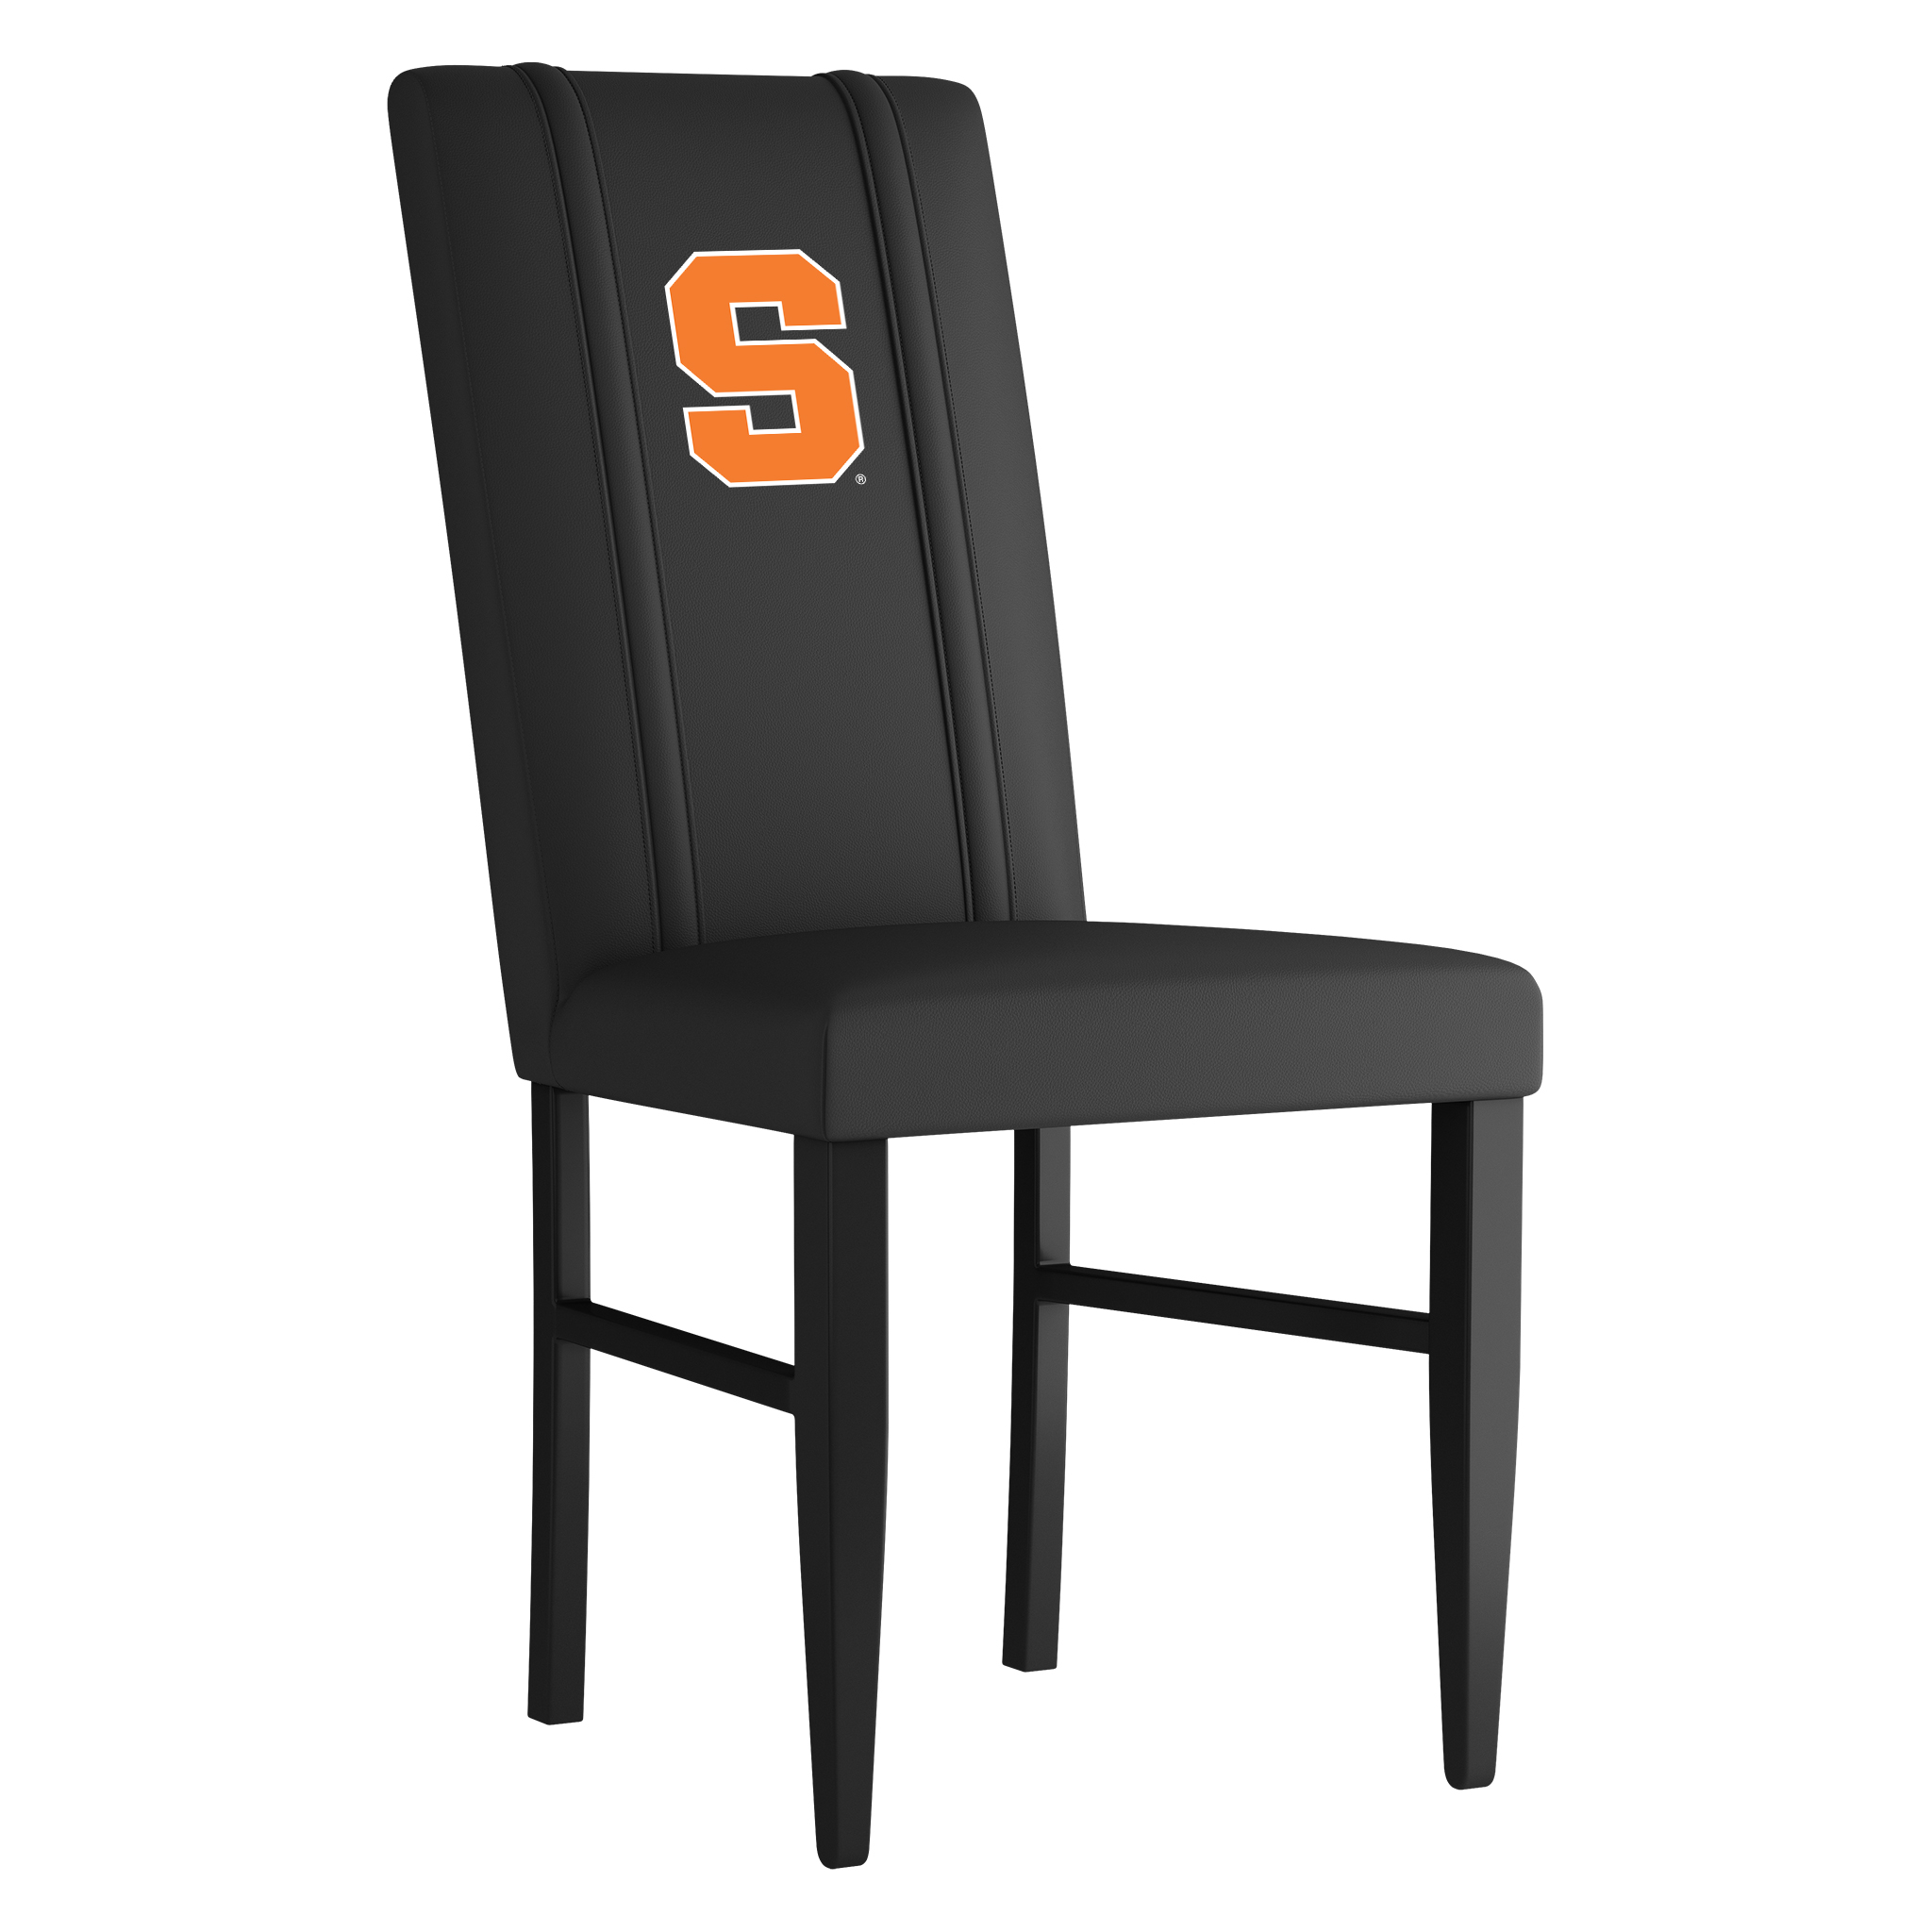 Syracuse Orangeman Side Chair 2000 With Syracuse Orangeman Logo